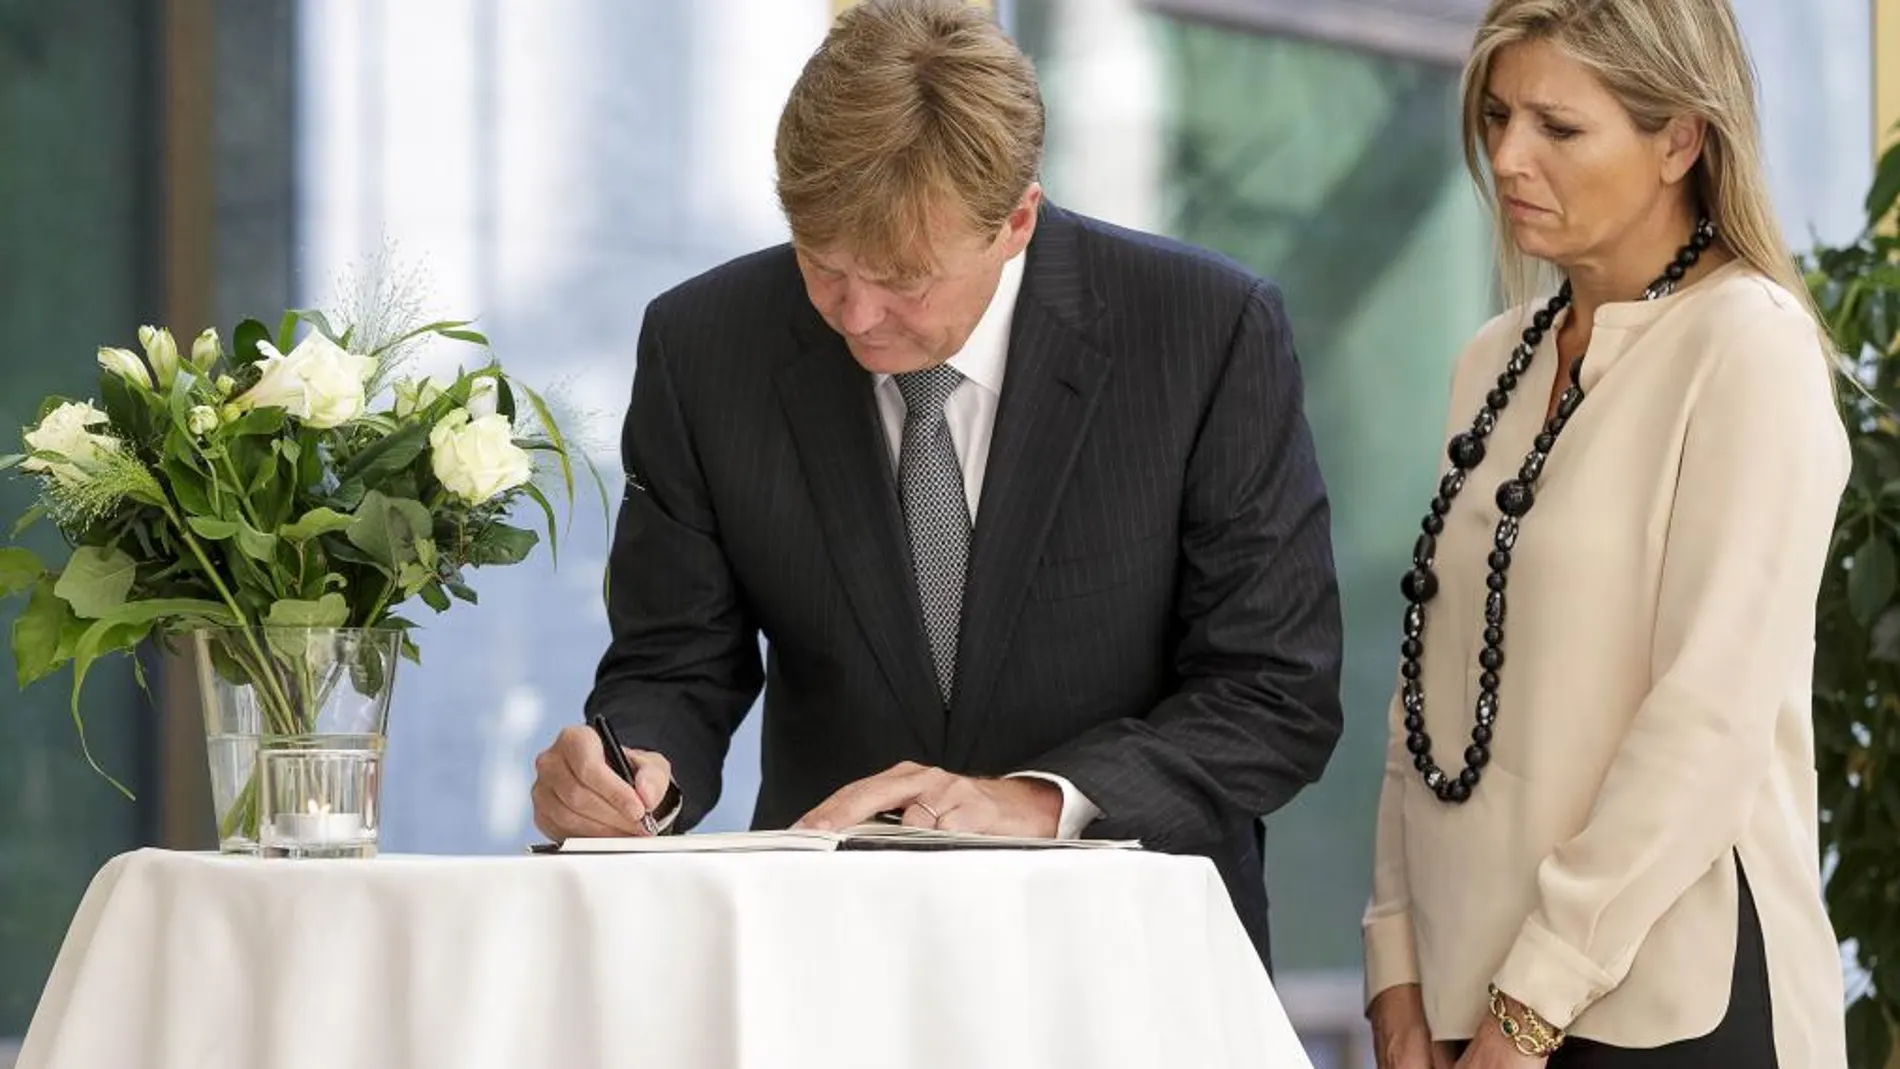 El Rey Guillermo Alejandro de Holanda firma en el libro de condolencias junto a la Reina Máxima en La Haya.